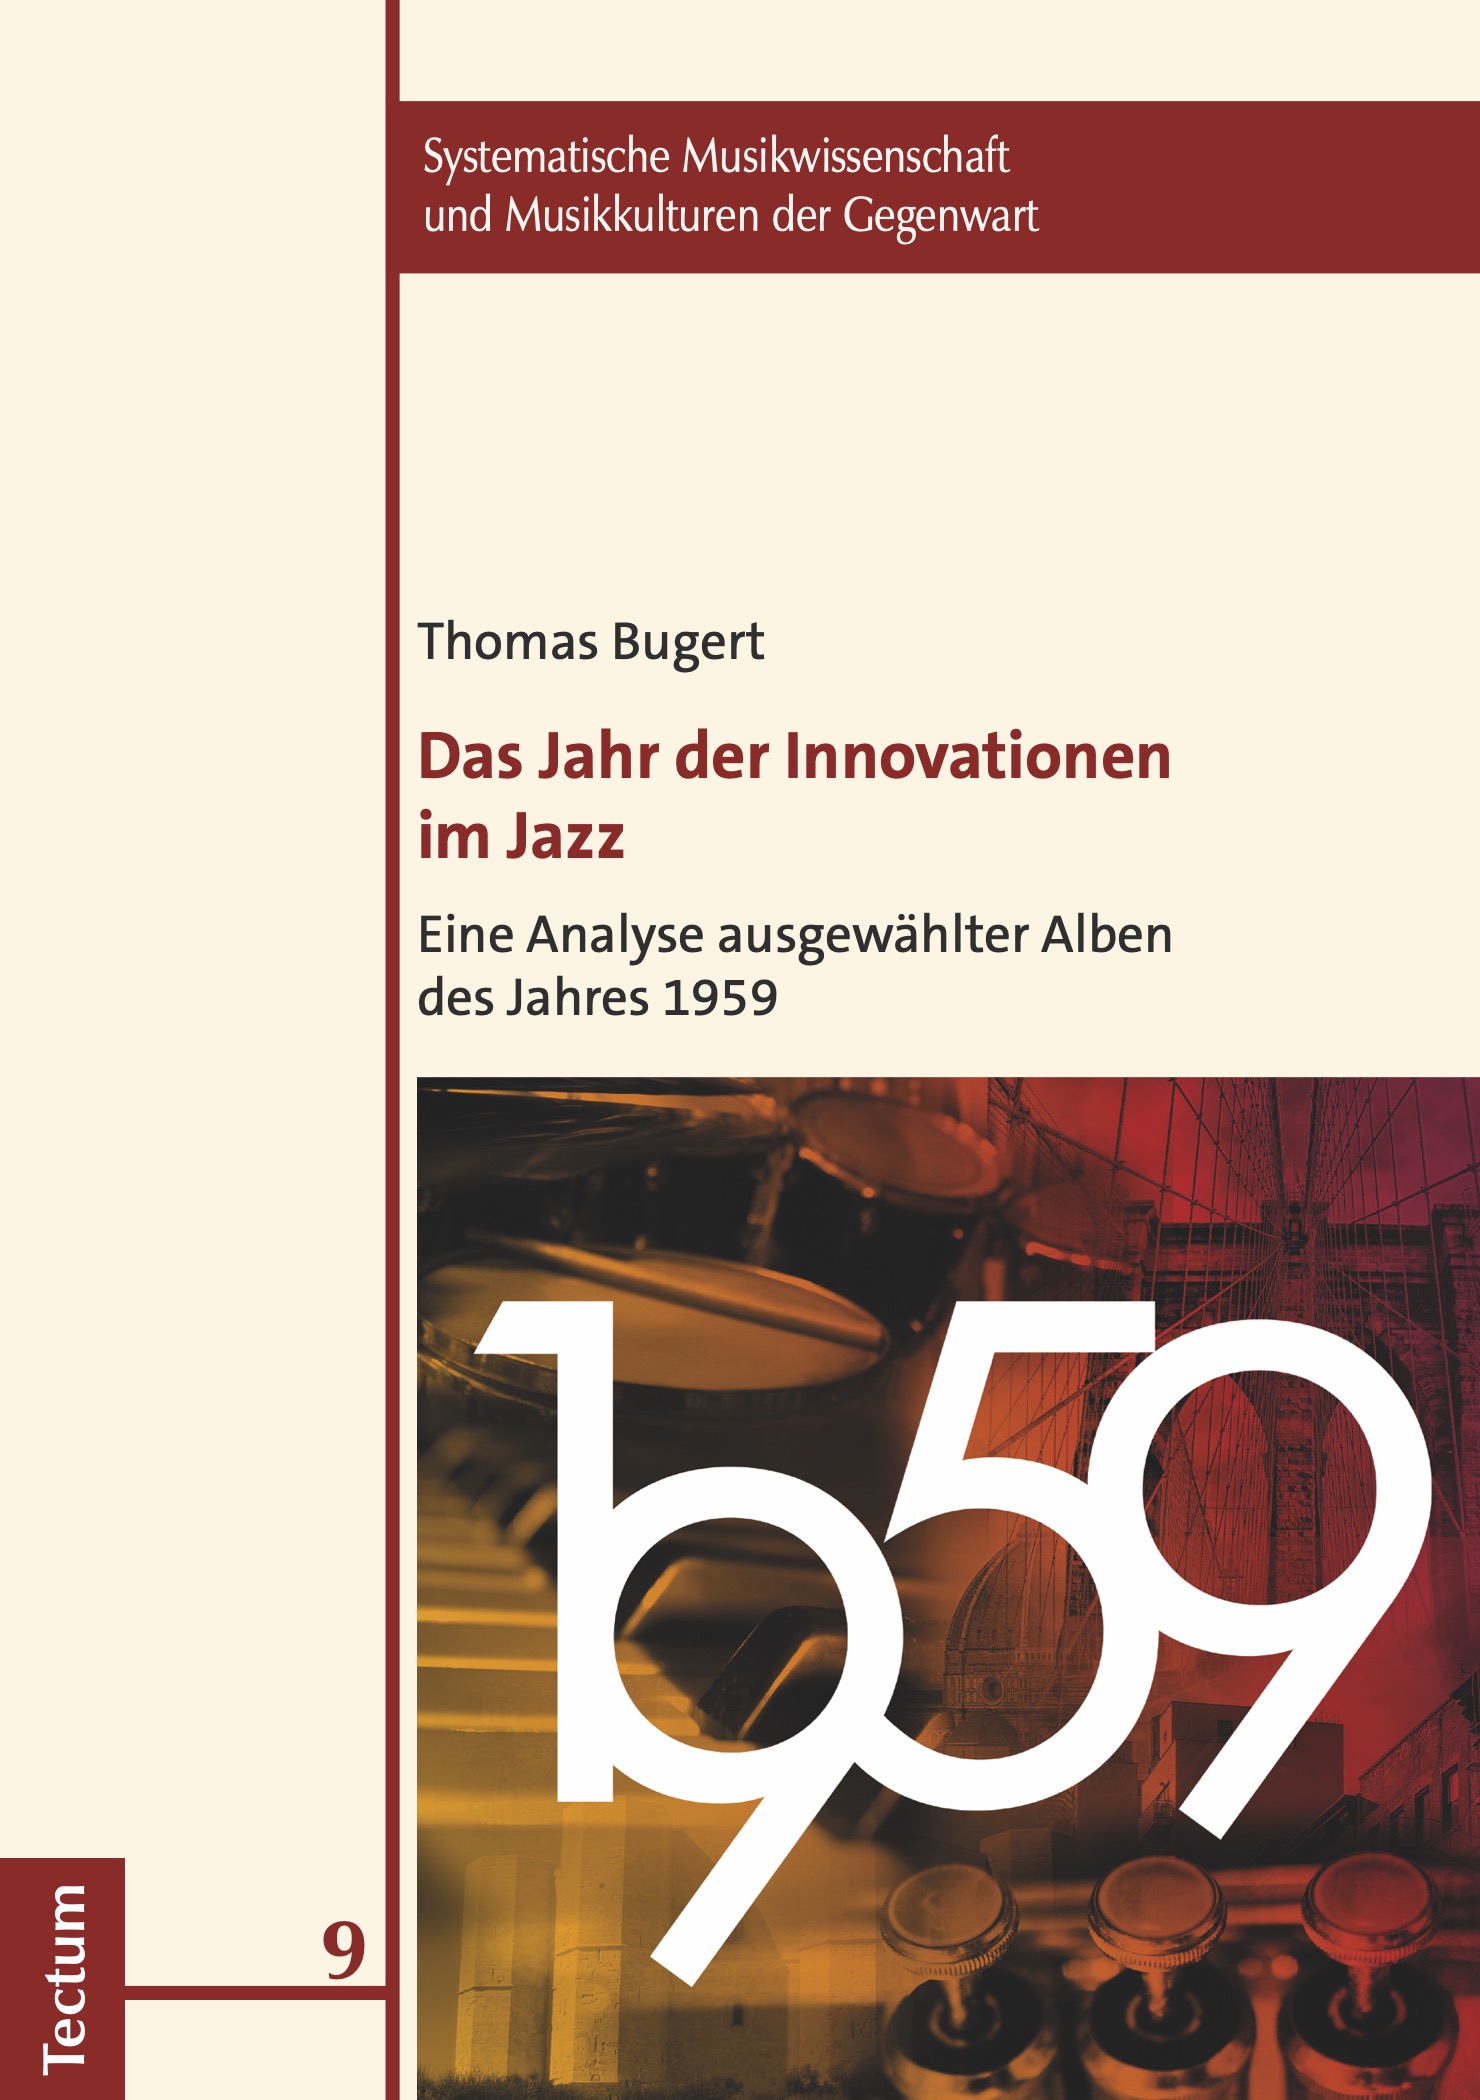 cover Bugert 1959